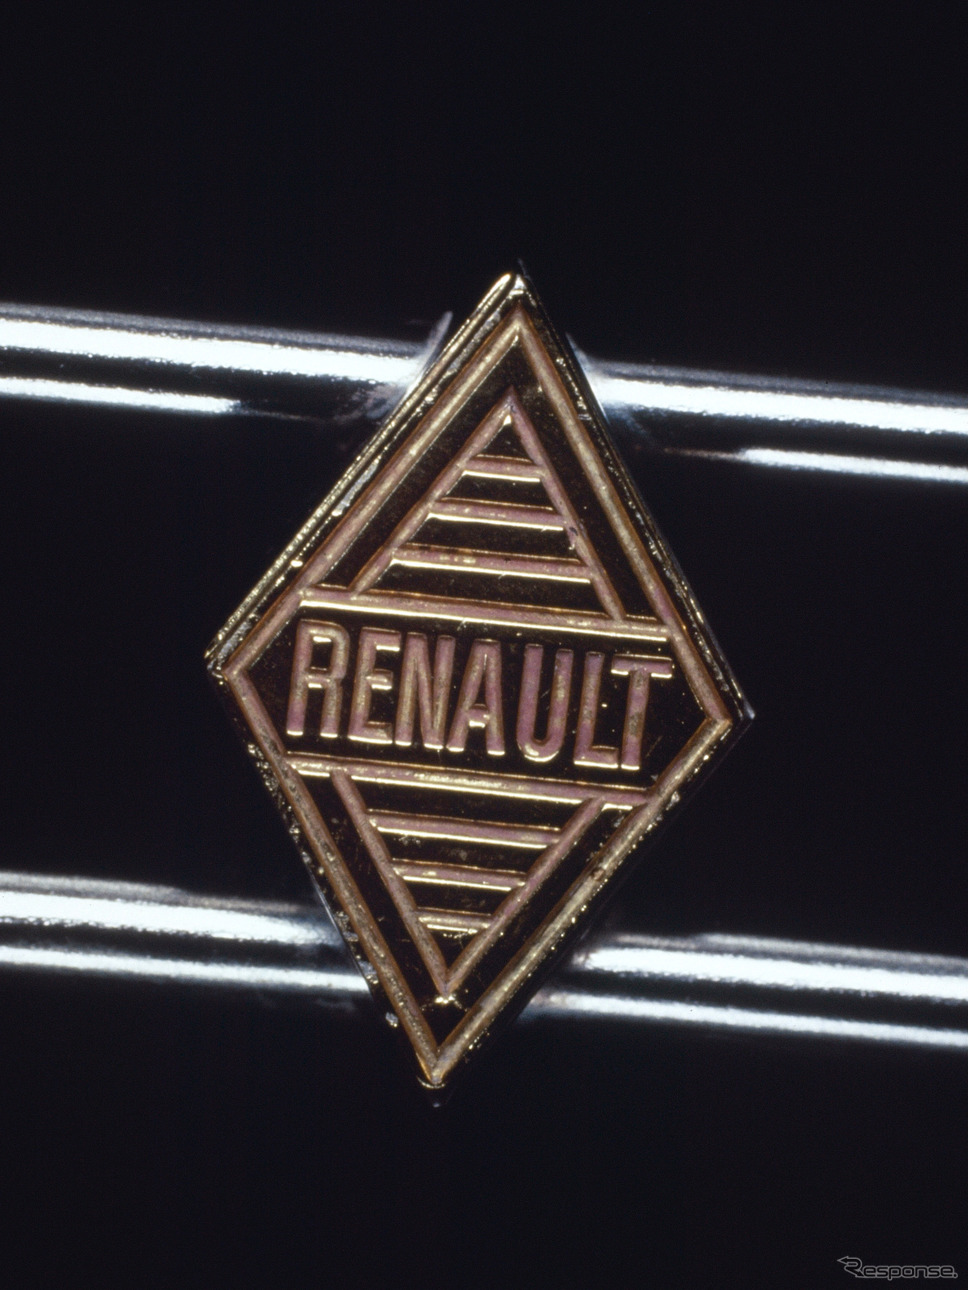 ルノーのロゴ、1959年《photo by Renault》